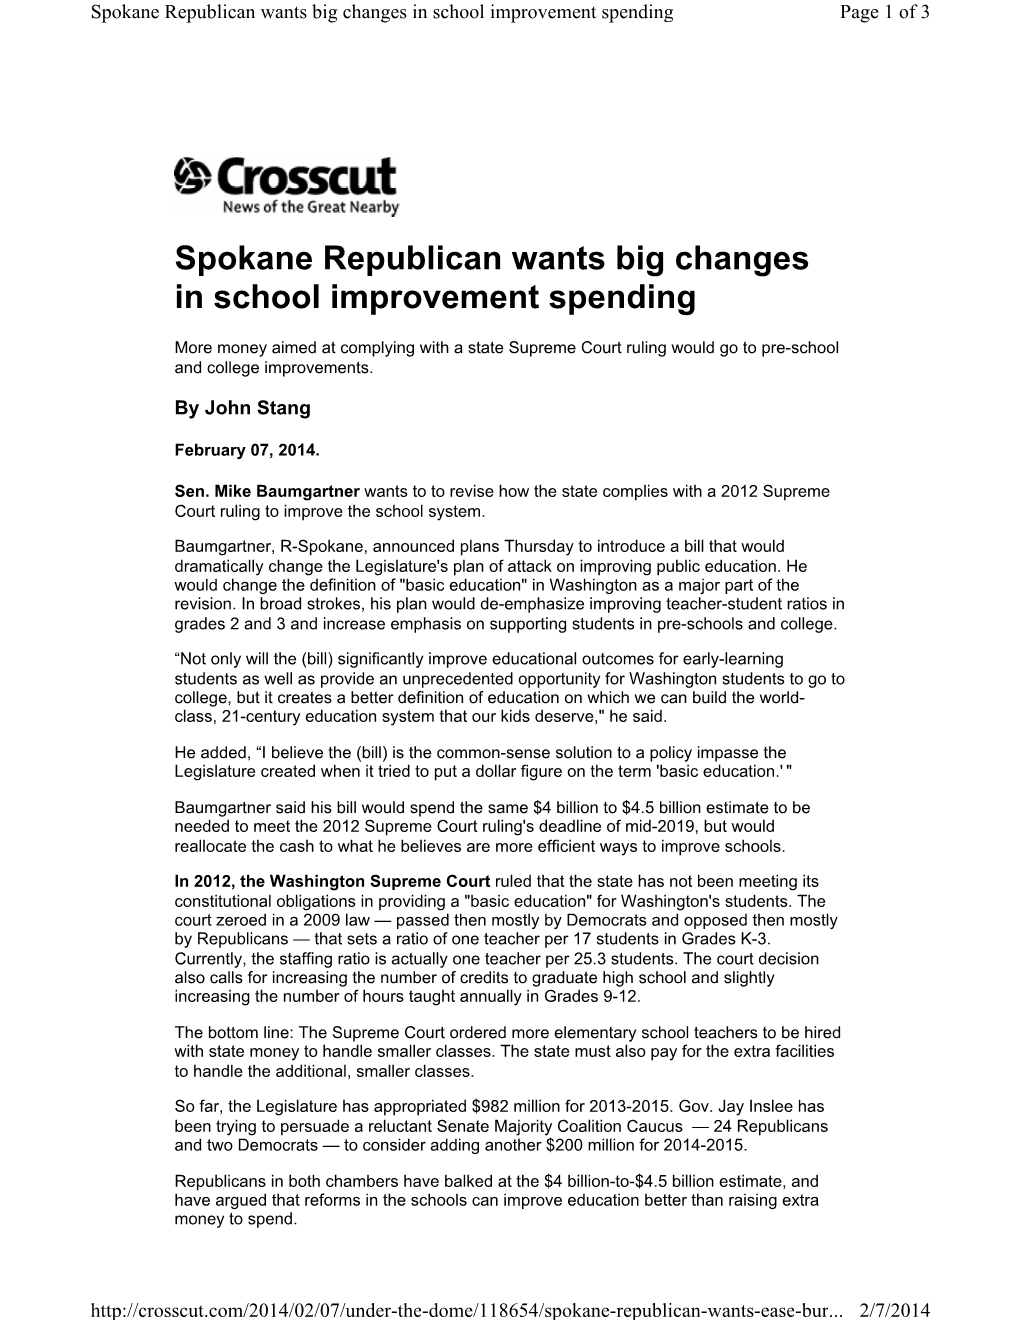 Spokane Republican Wants Big Changes in School Improvement Spending Page 1 of 3